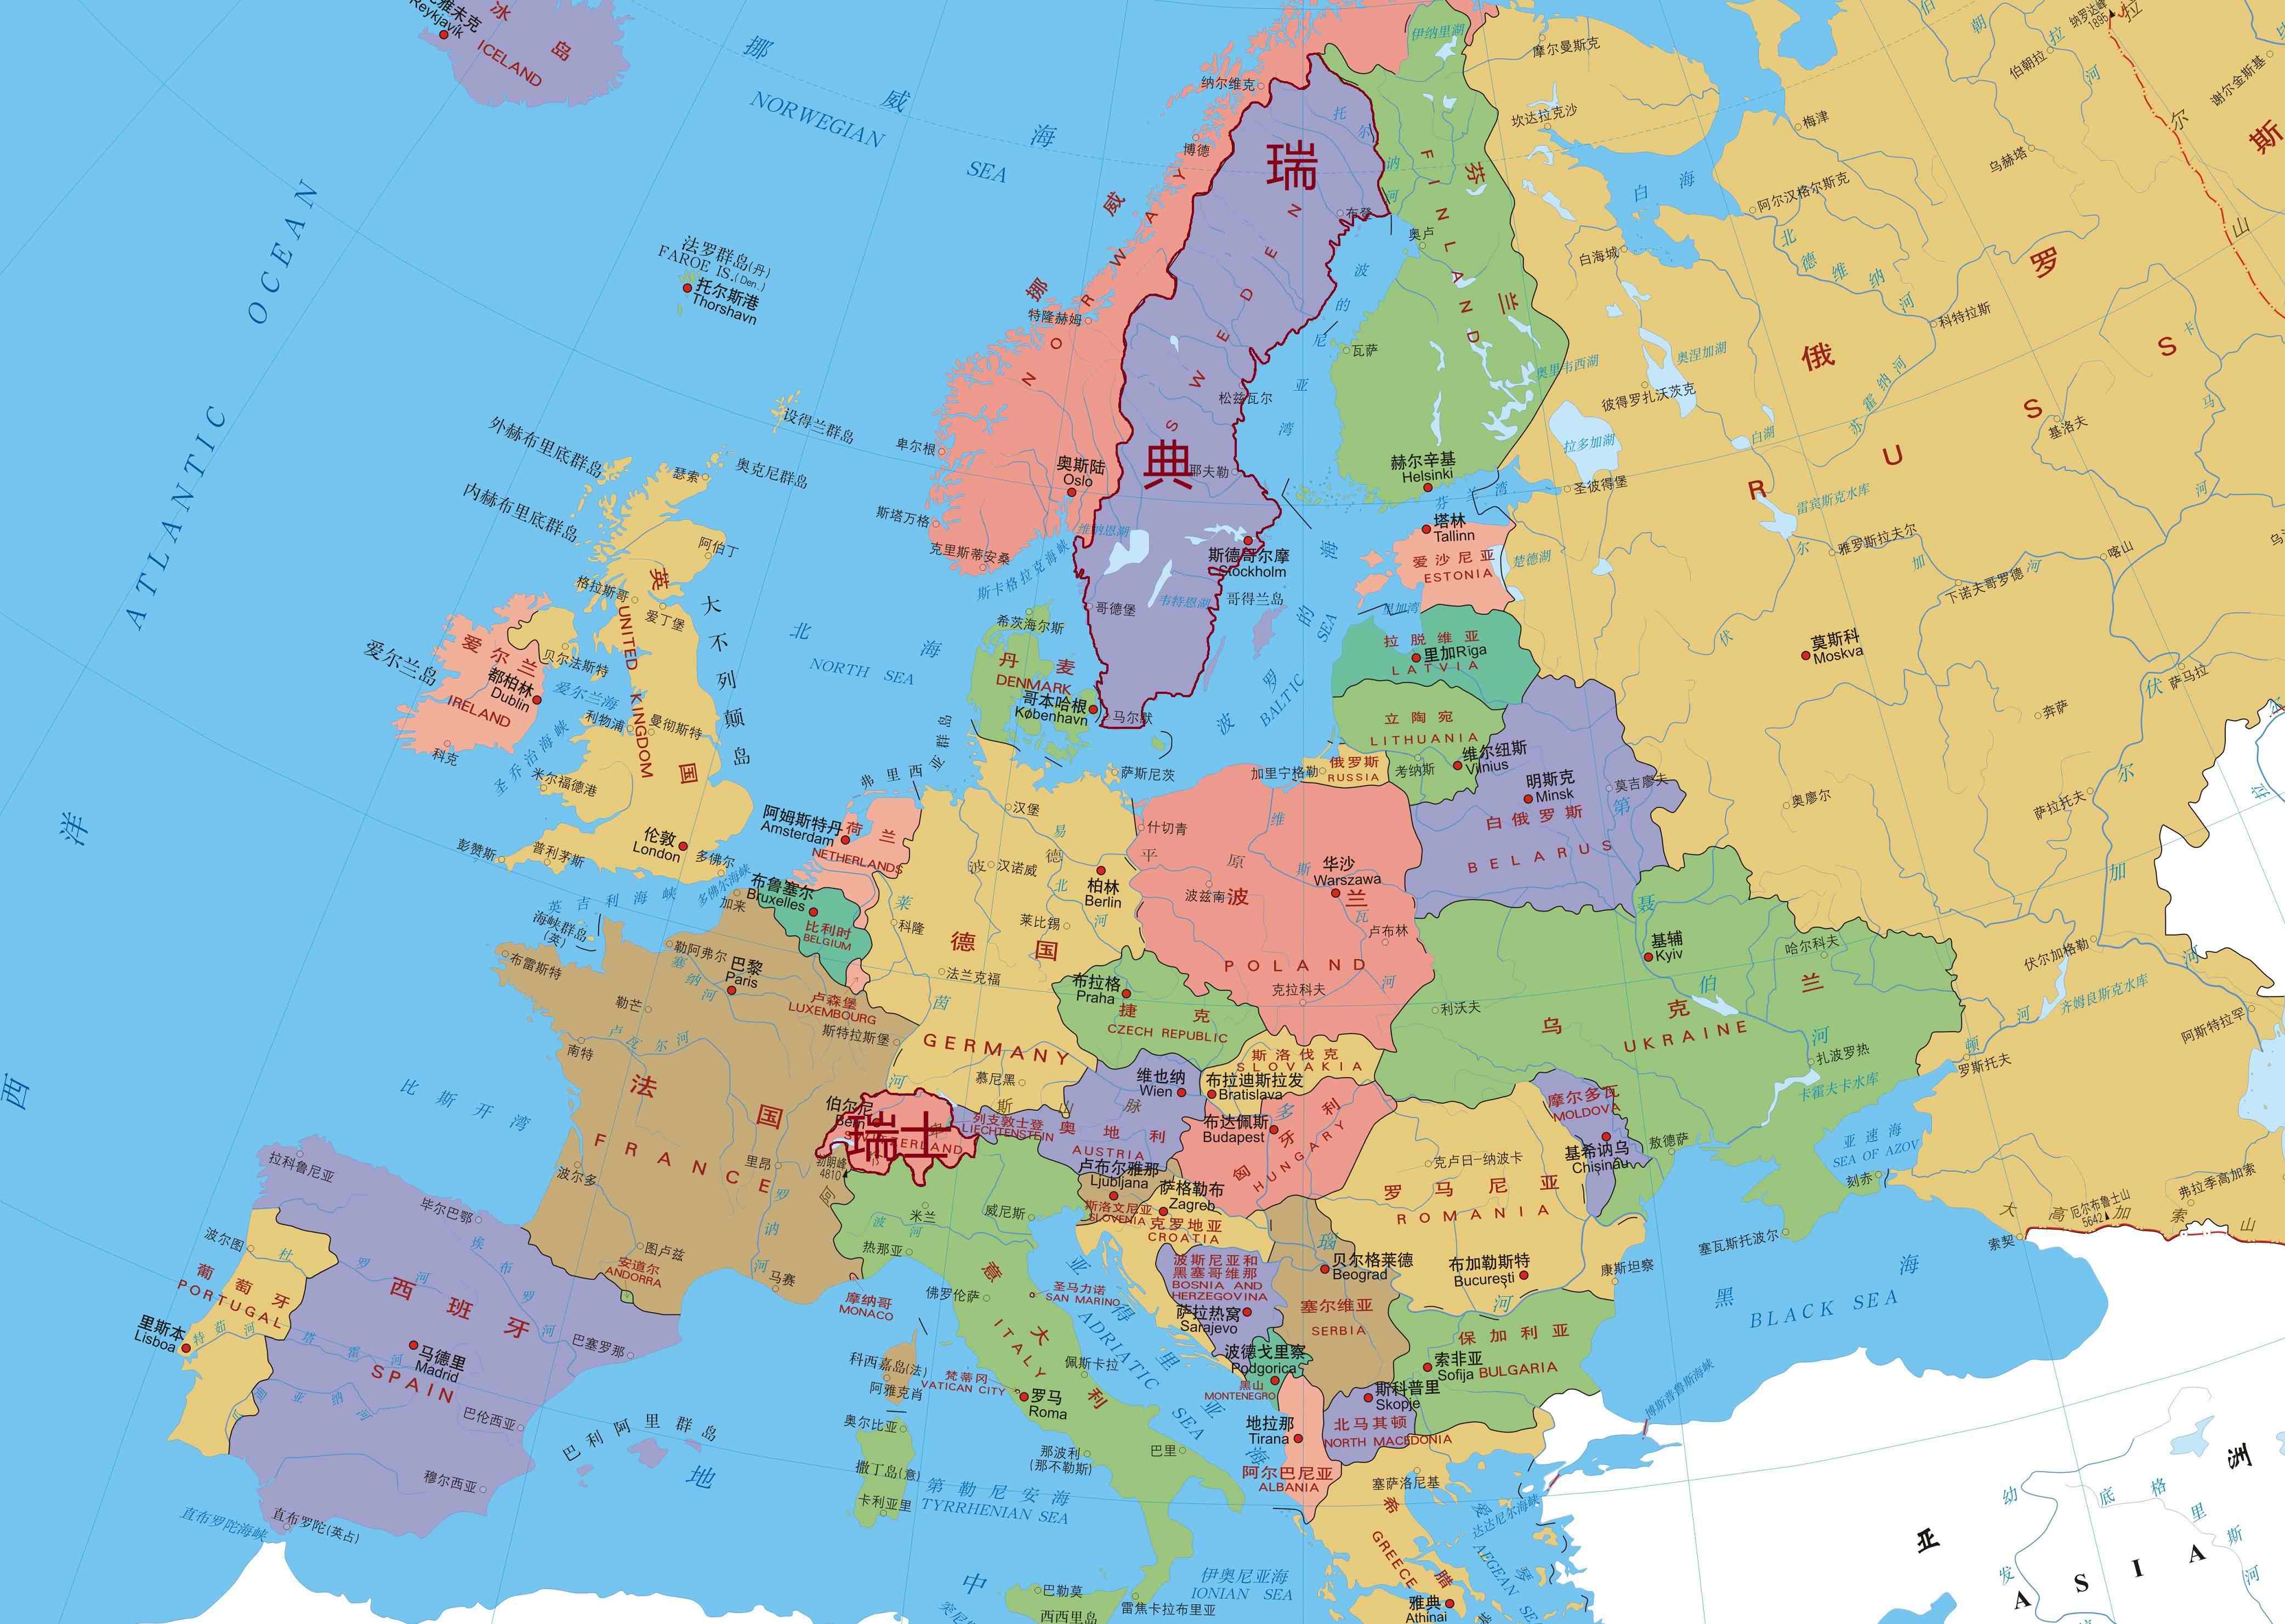 首先,从地理位置来看,瑞典和瑞士虽然都属于欧洲,地处欧洲西部,不过